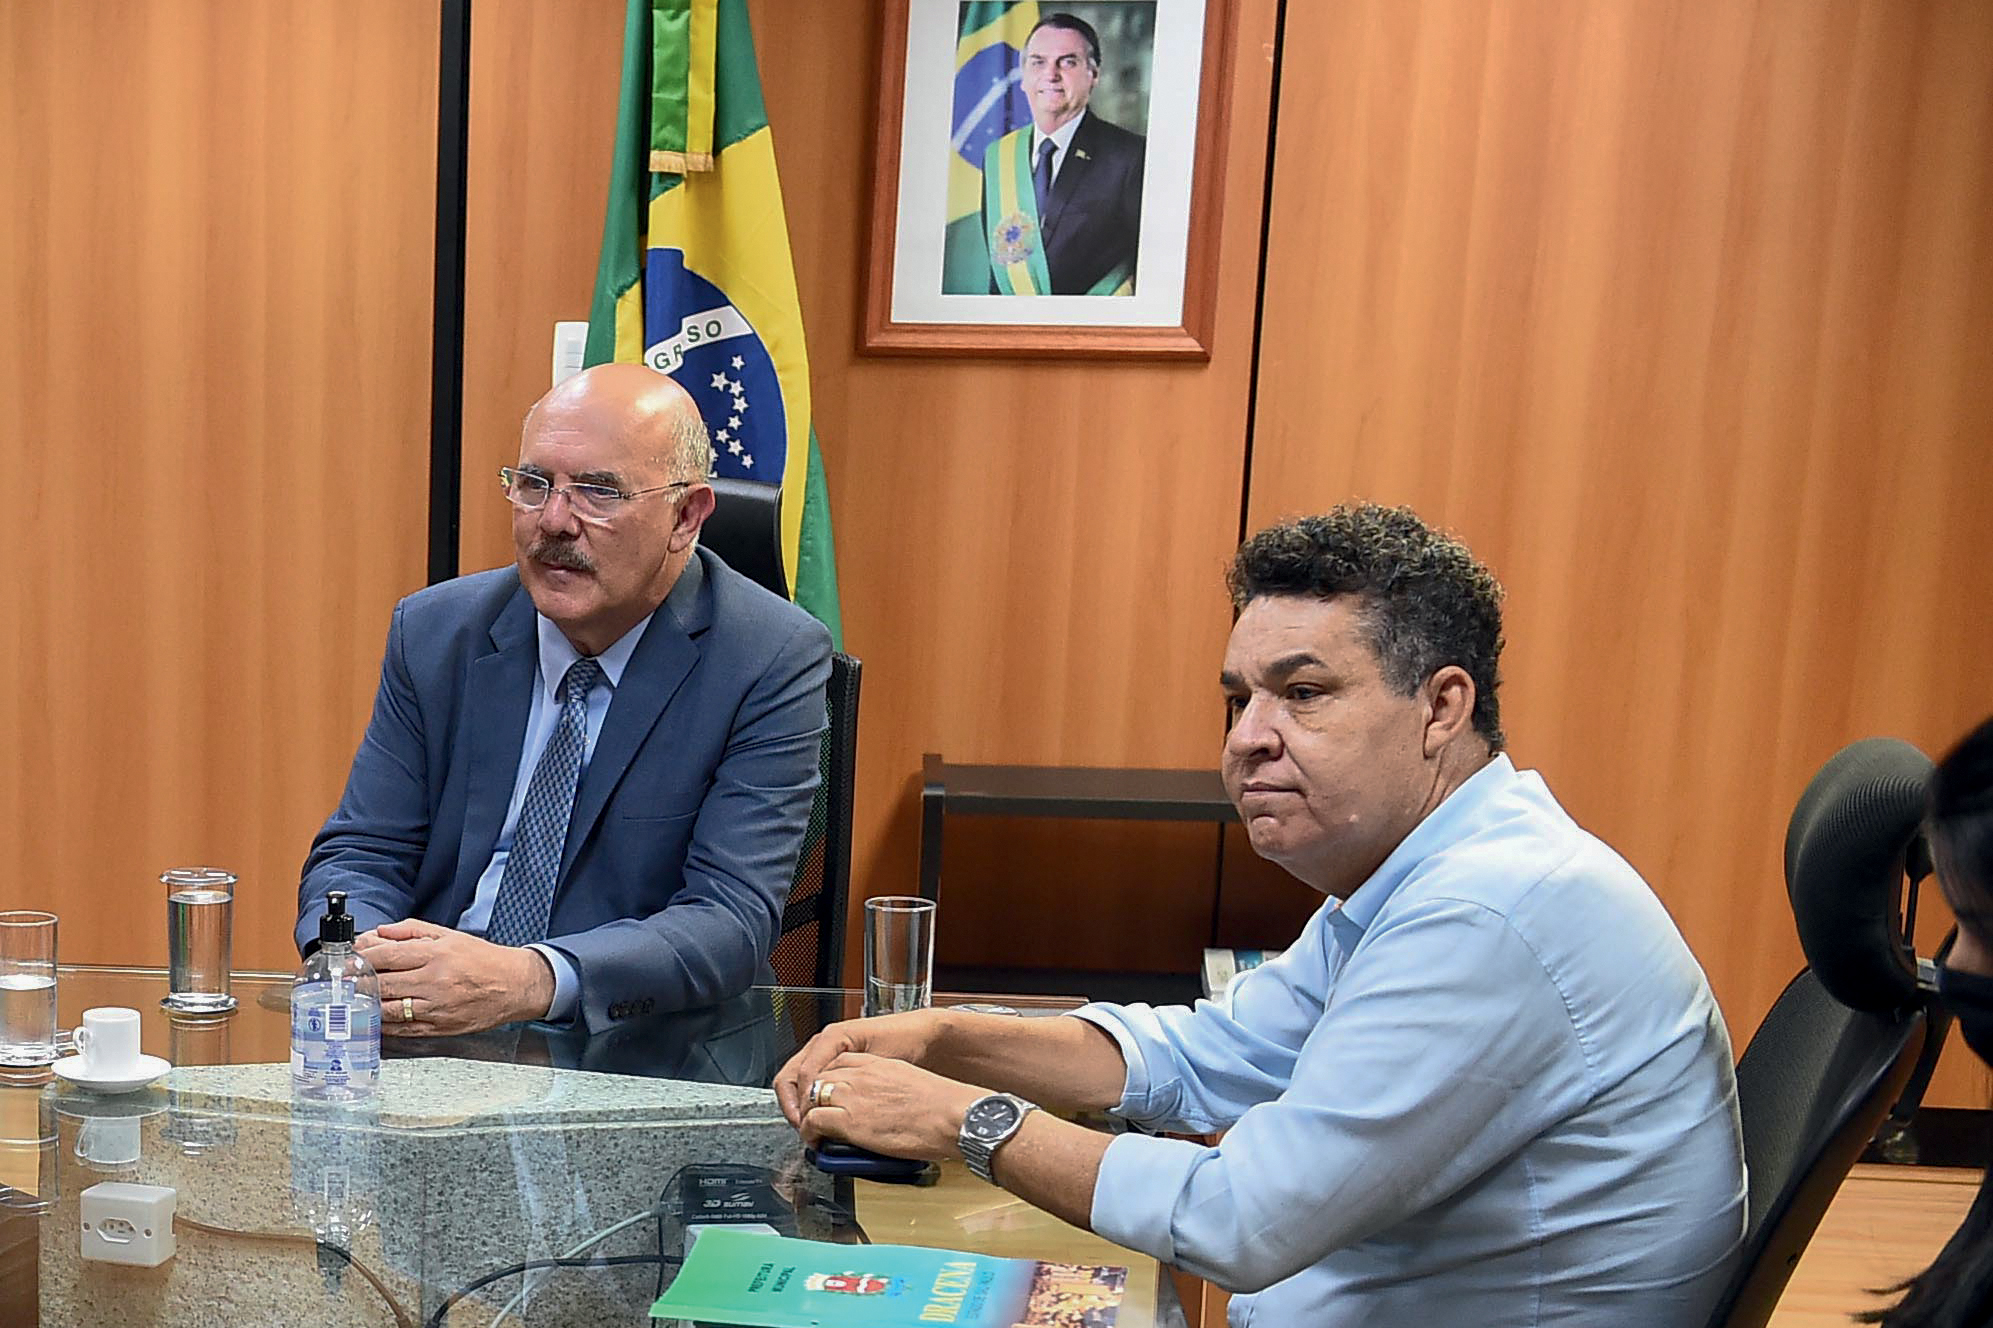 SACOLINHA - O ex-ministro Ribeiro e o pastor Arilton Moura: suspeita de parceria financeira em nome da igreja -